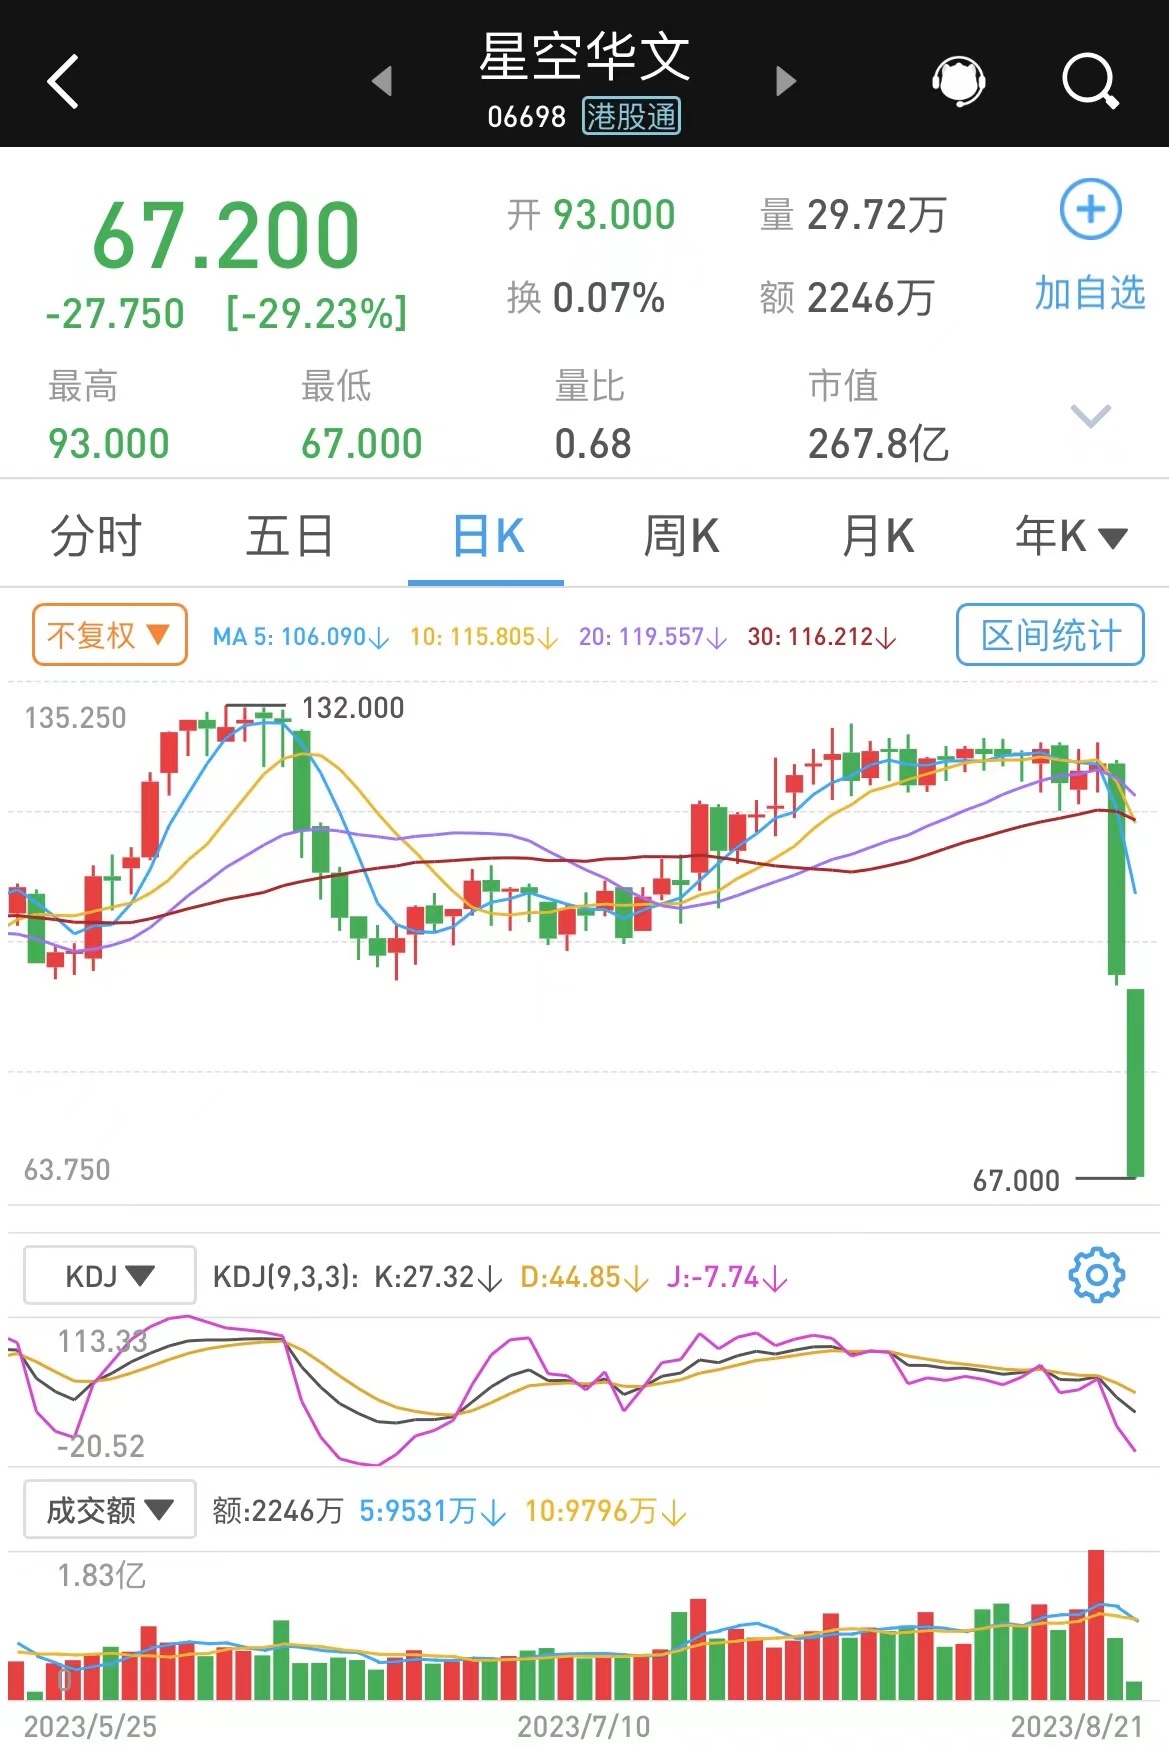 中国好声音制作方母公司星空华文一度跌超29%两日股价接近腰斩